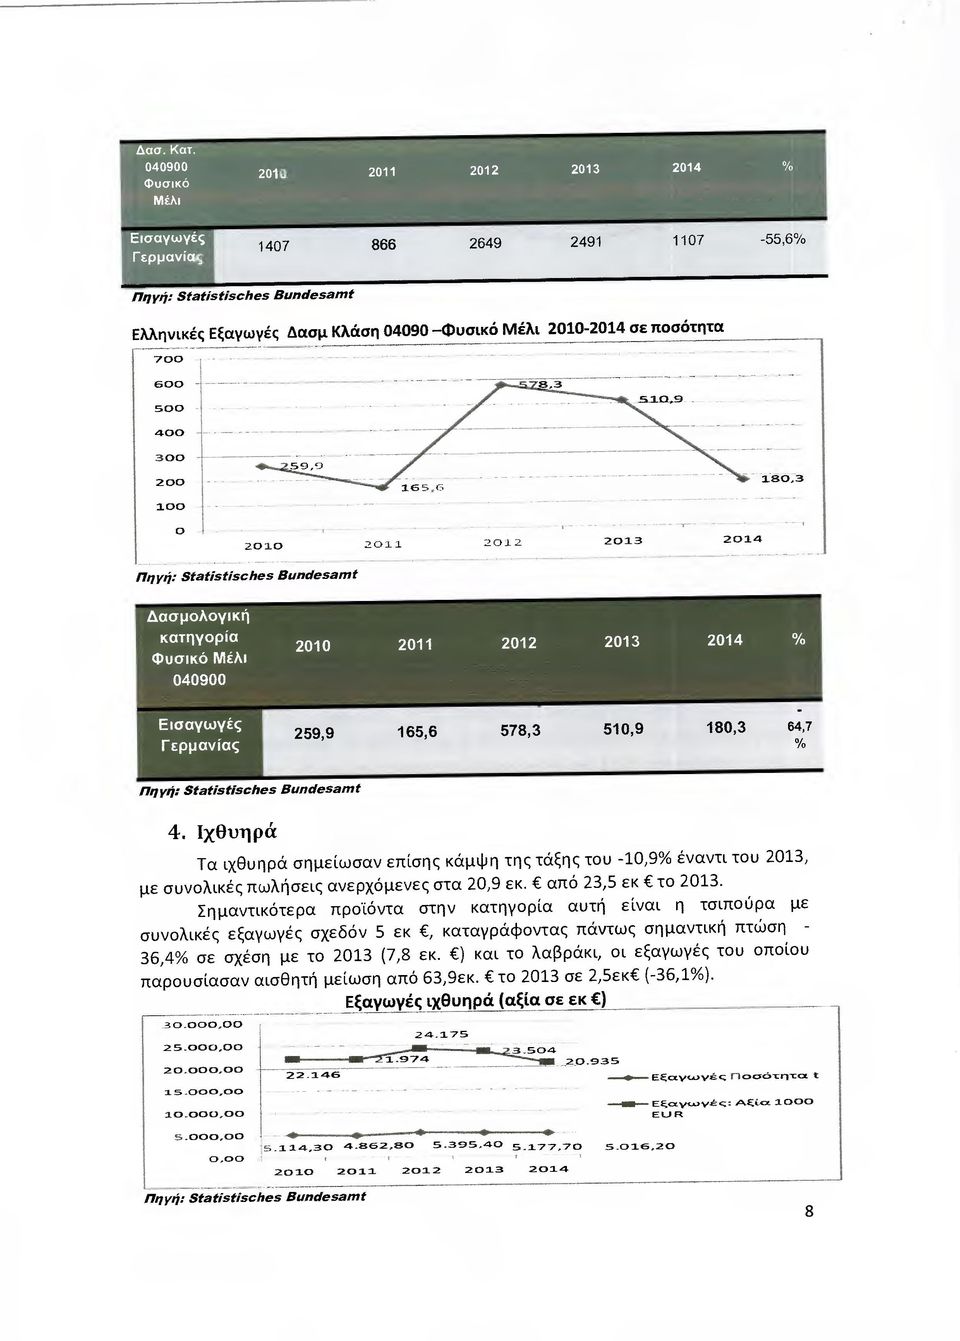 Ιχθυηρά Τα ιχβυηρά σηµε ίωσαν επίσης κάµψη της τάξης του -10,9% έναντι του 2013, µε συνολικές πωλήσεις ανερχόµενες στα 20,9 εκ. από 23,5 εκ το 2013.